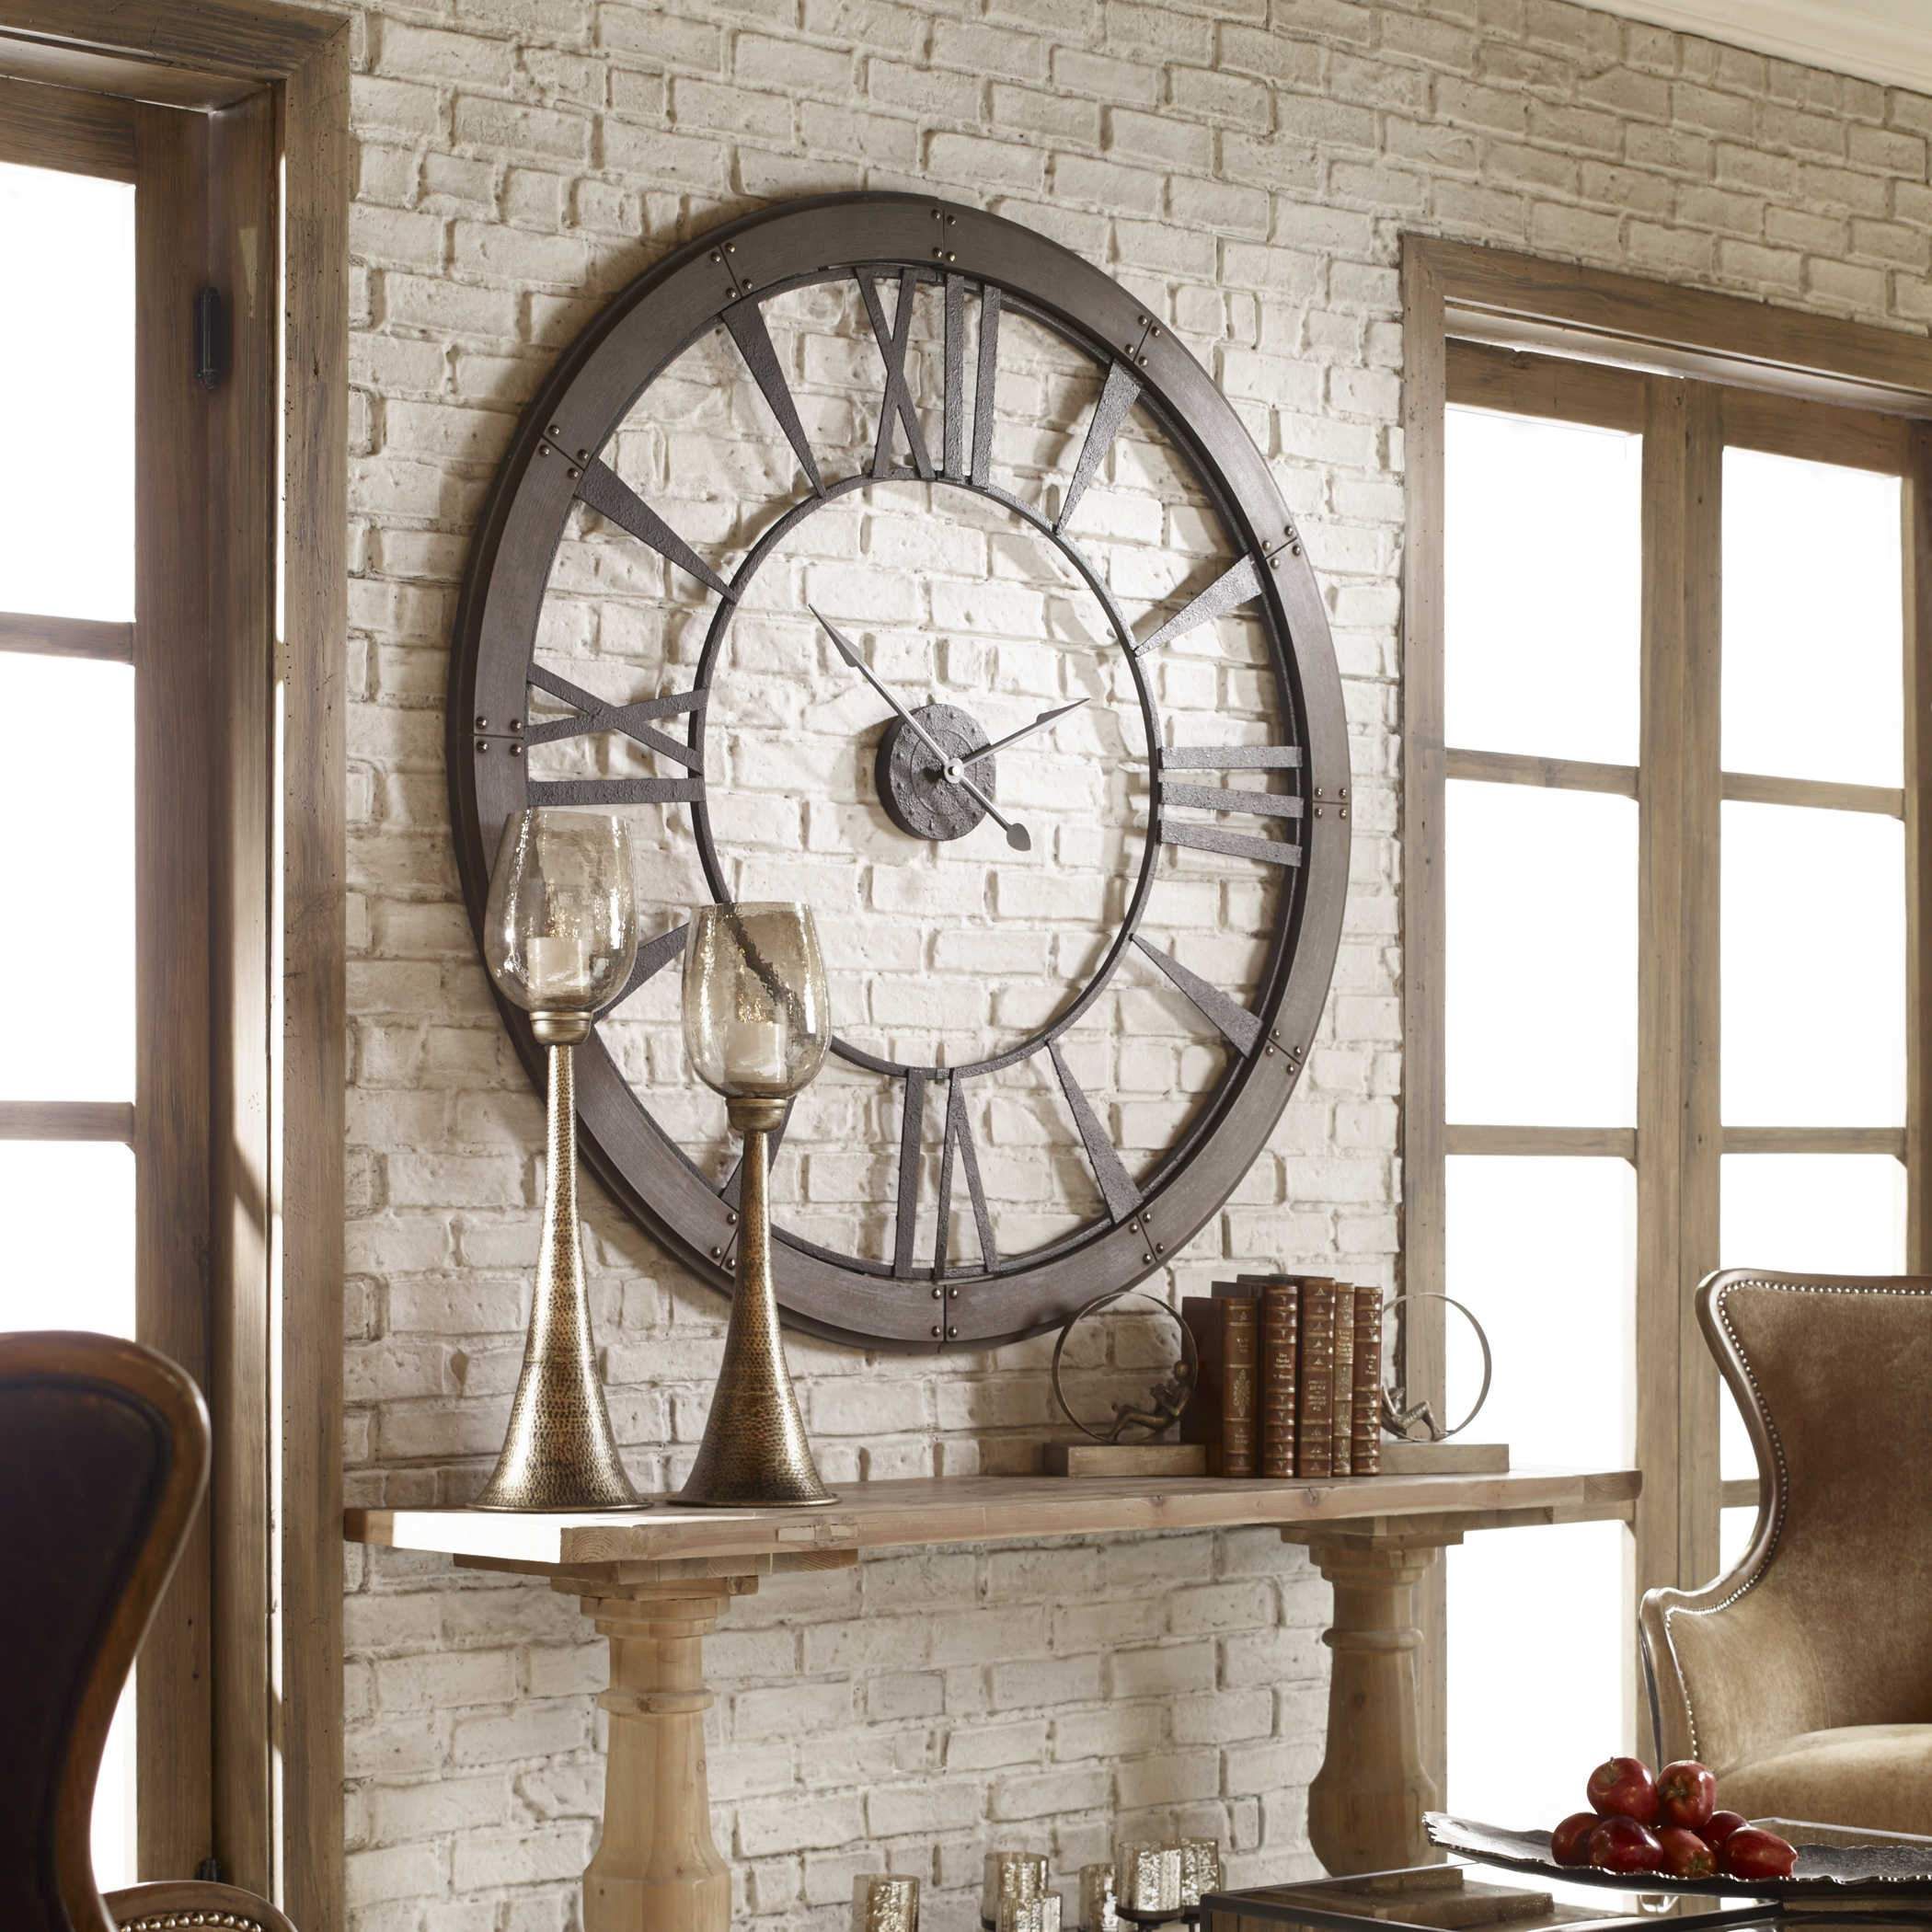 Unique Rustic Wall Clock